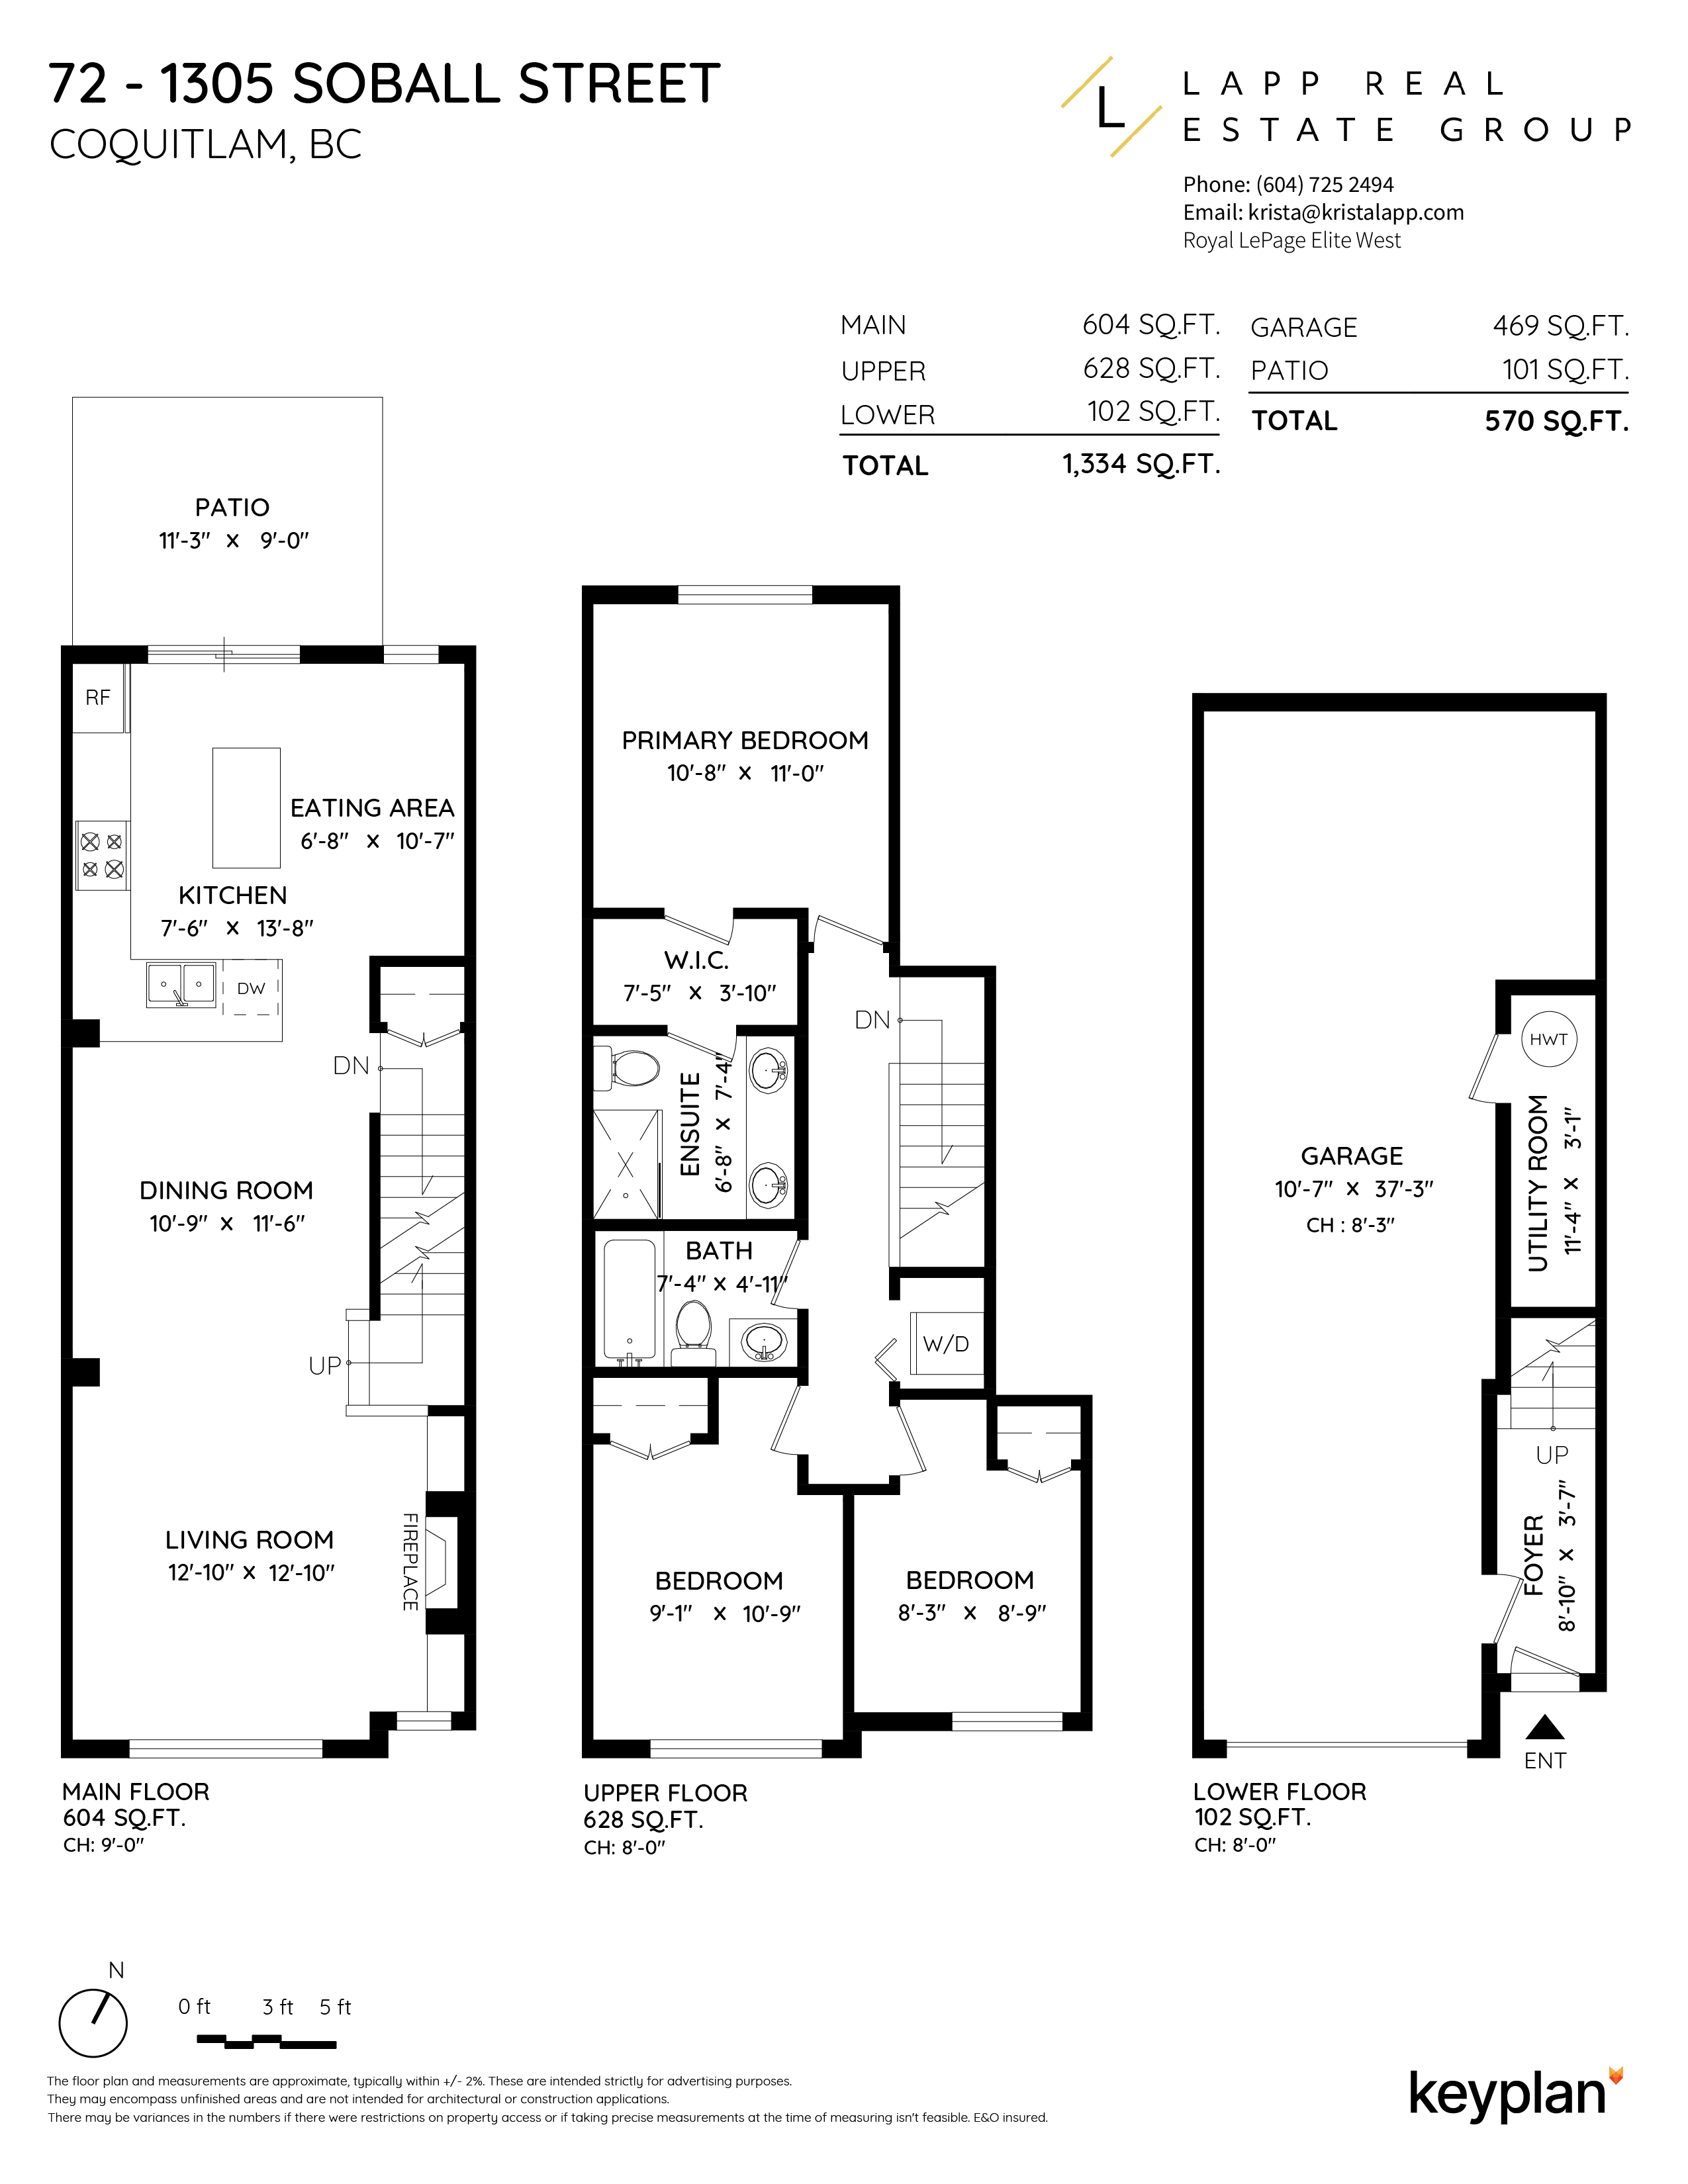 Krista Lapp - Unit 72 - 1305 Soball Street, Coquitlam, BC, Canada | Floor Plan 1